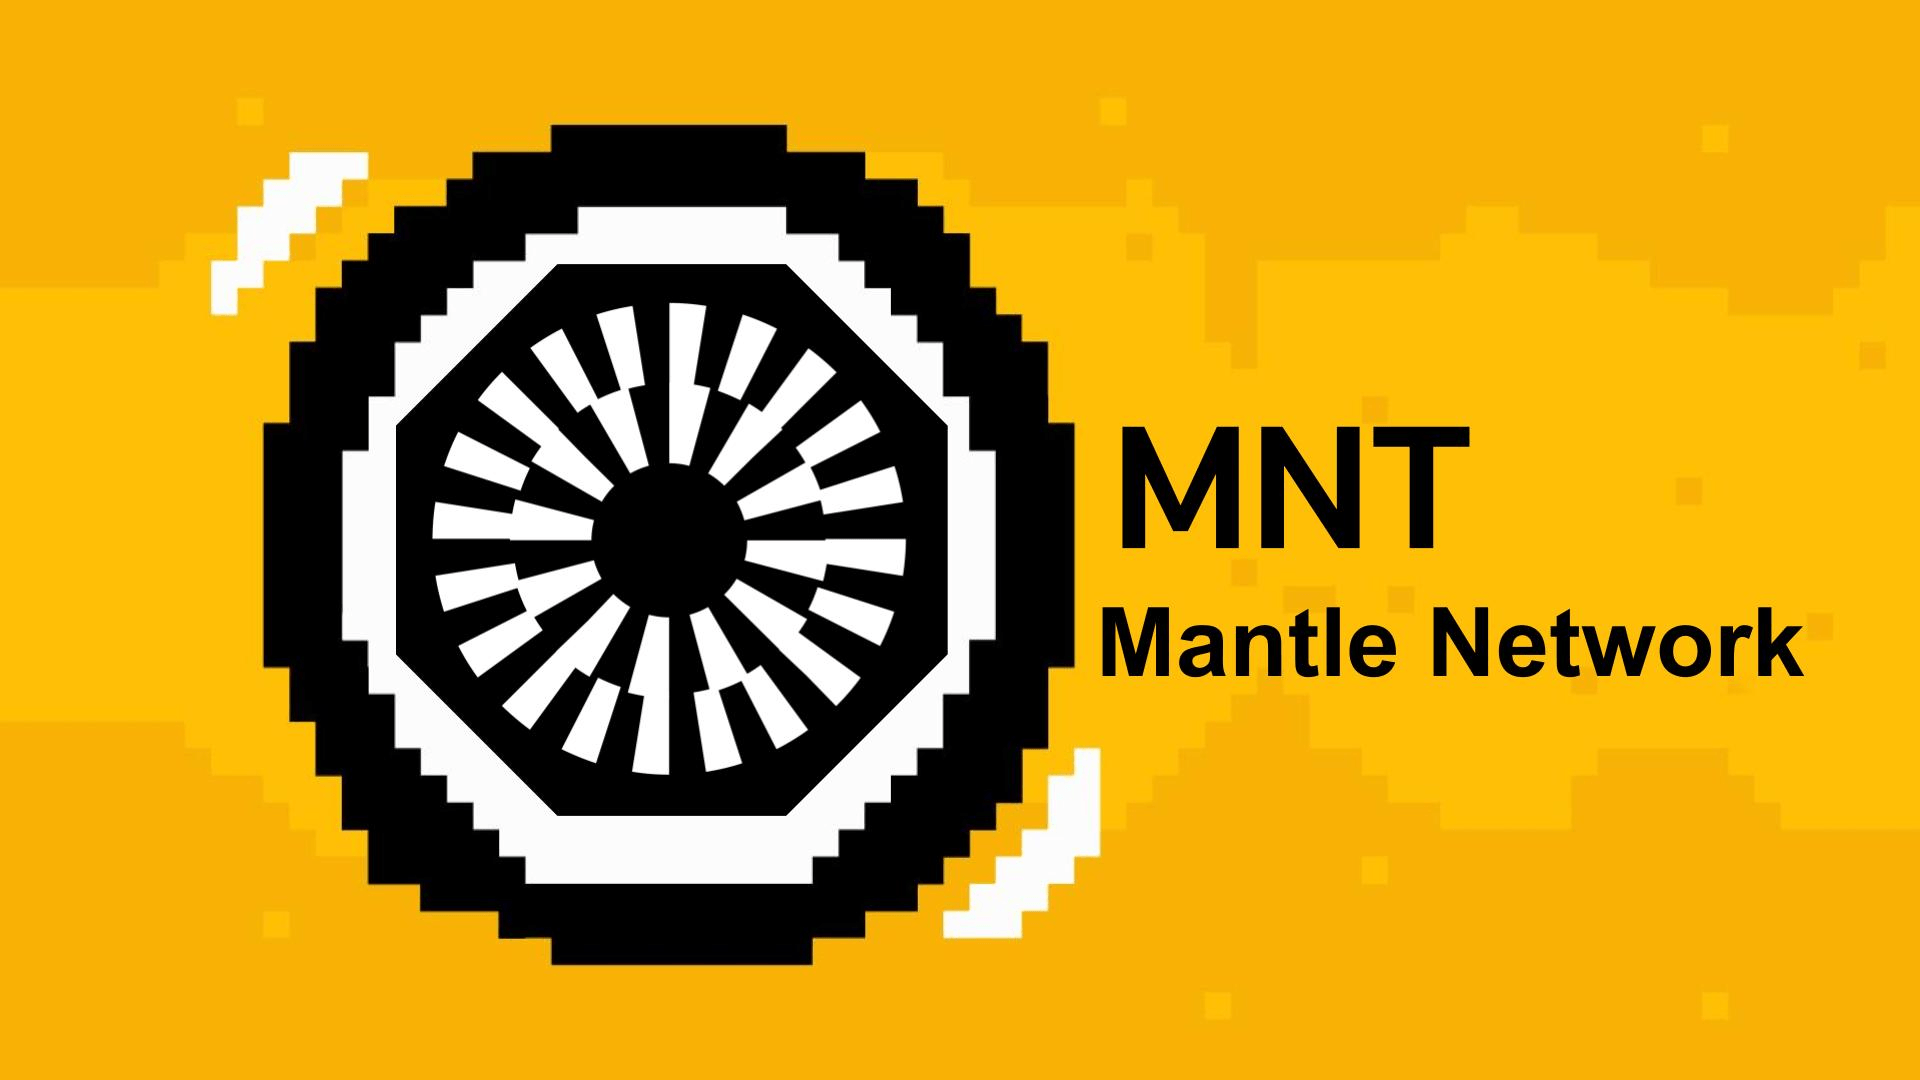 mantle network là gì